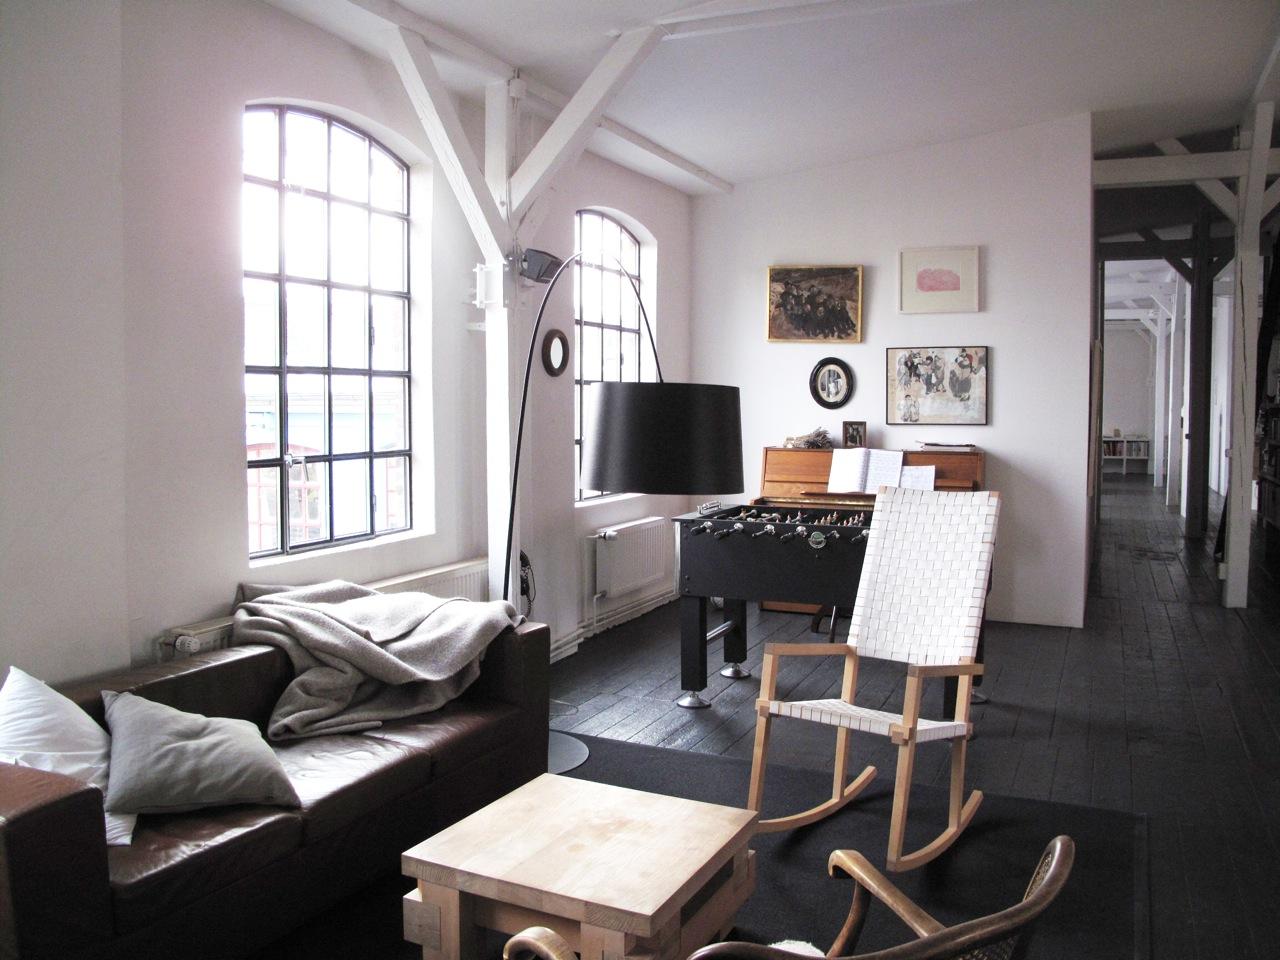 Sitzecke und Kickertisch im Wohnzimmer #bogenlampe #holztisch #schaukelstuhl #sofa #sitzecke ©scout for location